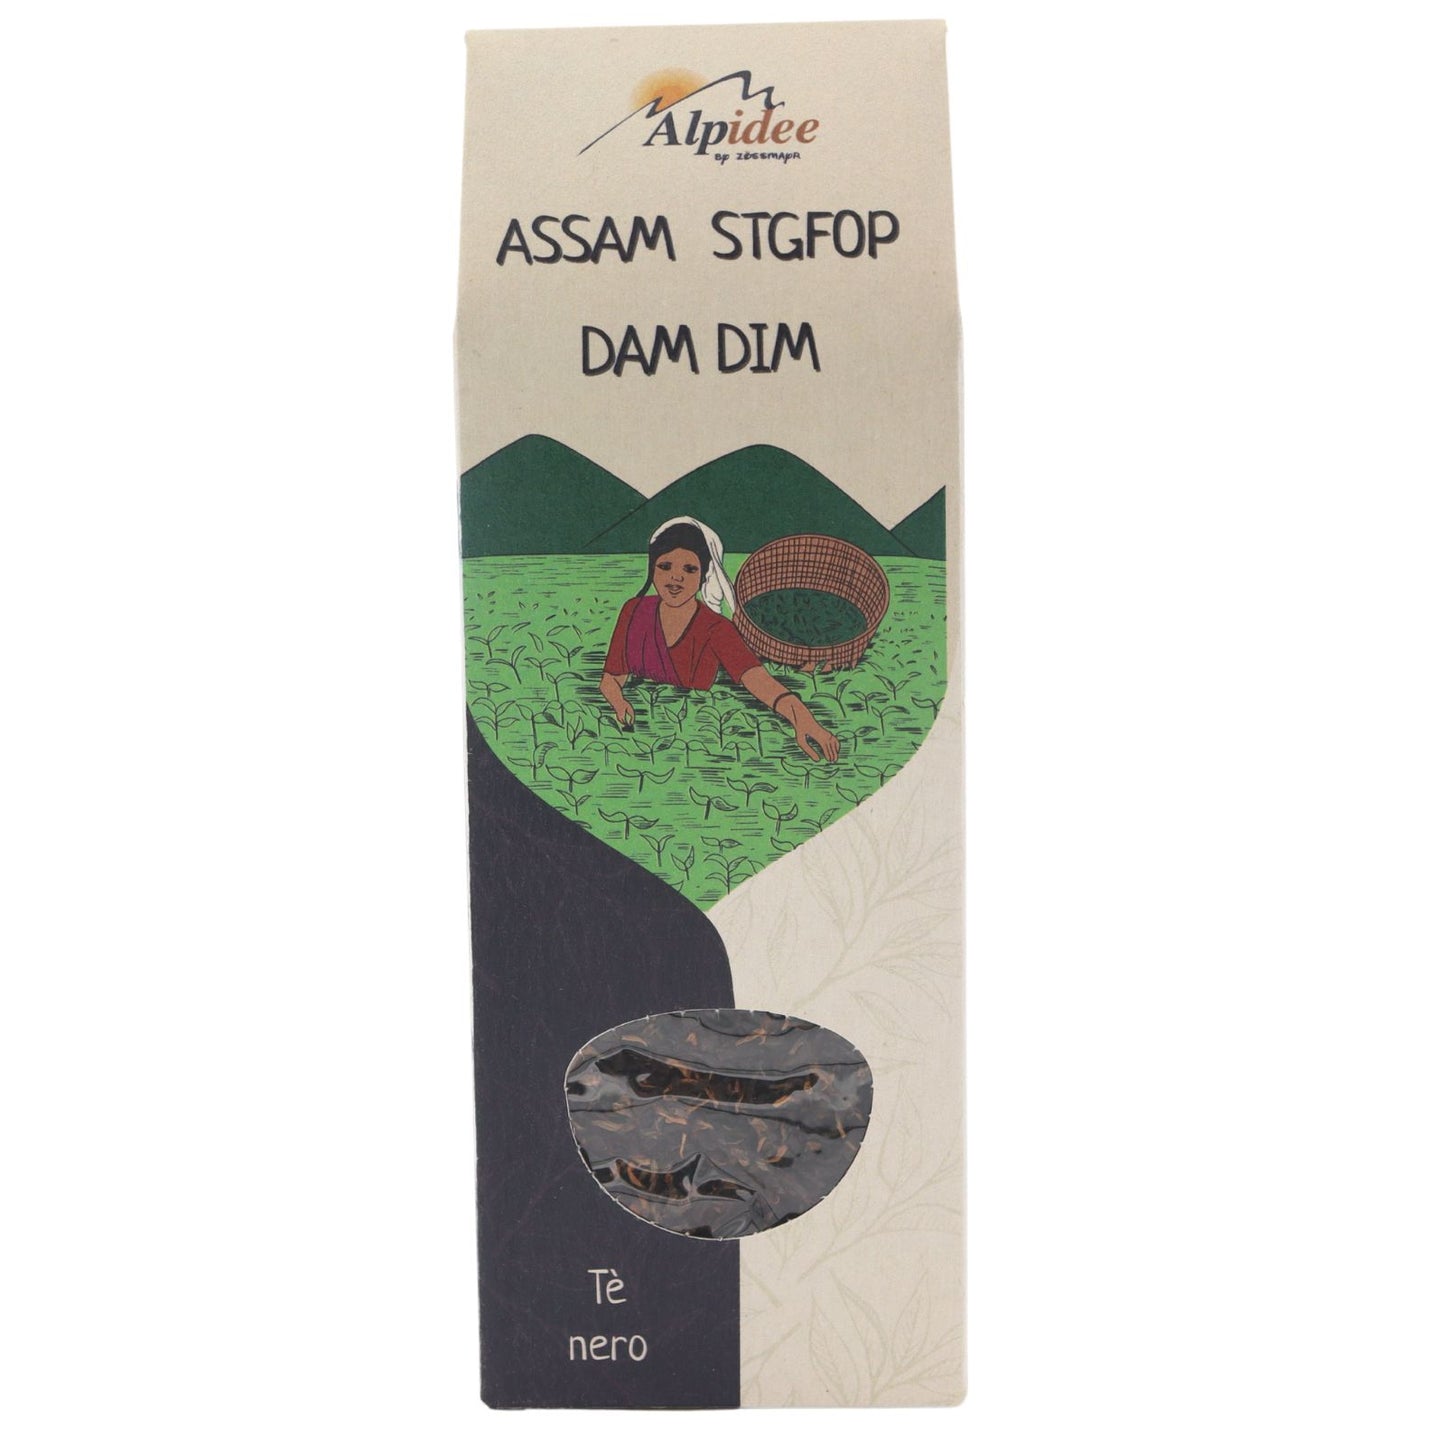 Tè nero ASSAM STGFOP DAM DIM, tè nero dall'India, 90g